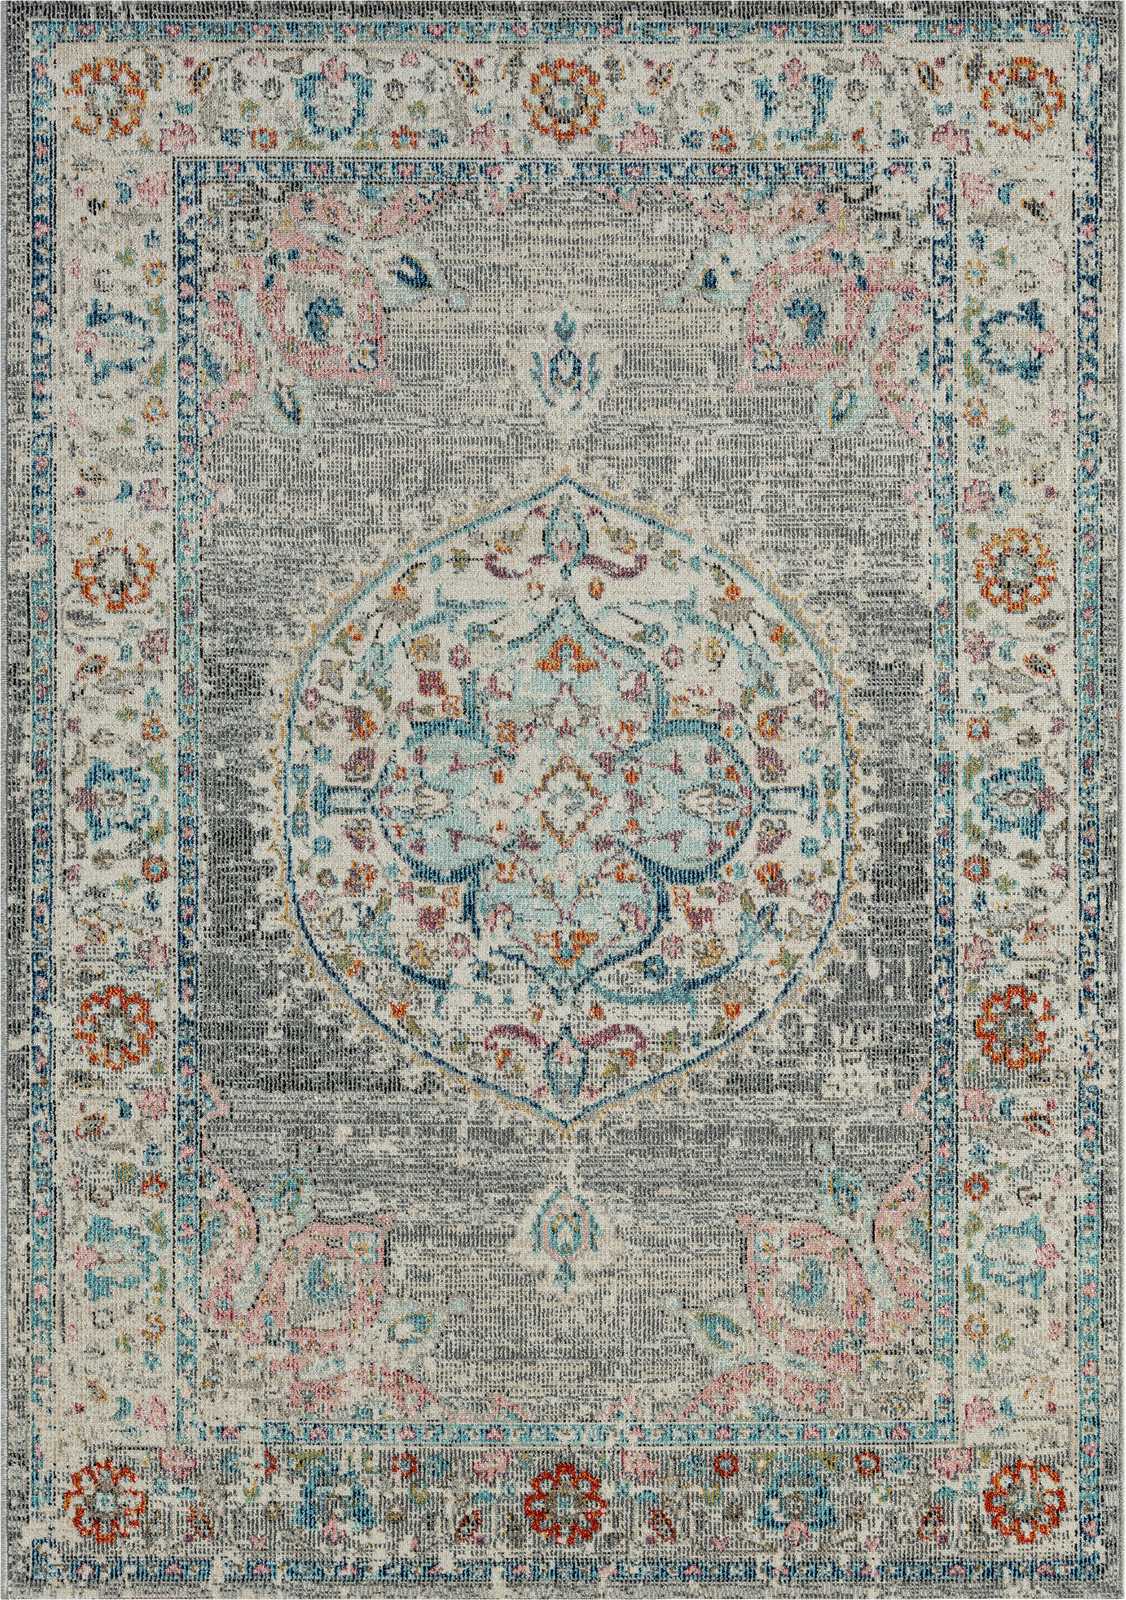             Grauer Outdoor Teppich aus Flachgewebe – 150 x 80 cm
        